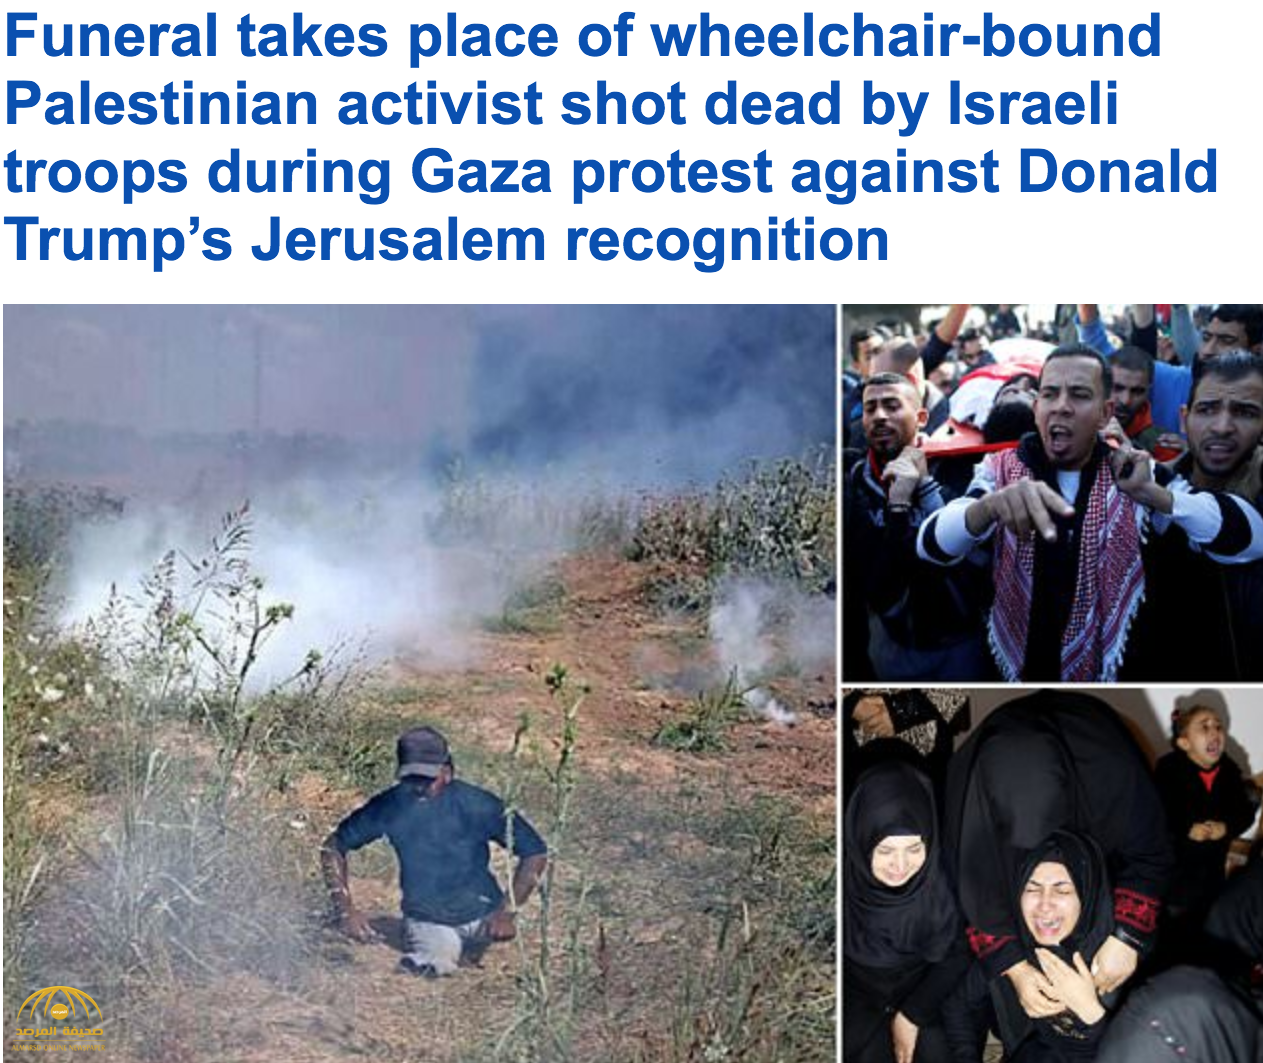 فقد ساقيه في غارة إسرائيلية قبل 10 سنوات.. فلسطينيون يشيعون أبوثريا بعد مقتله برصاصة-فيديو